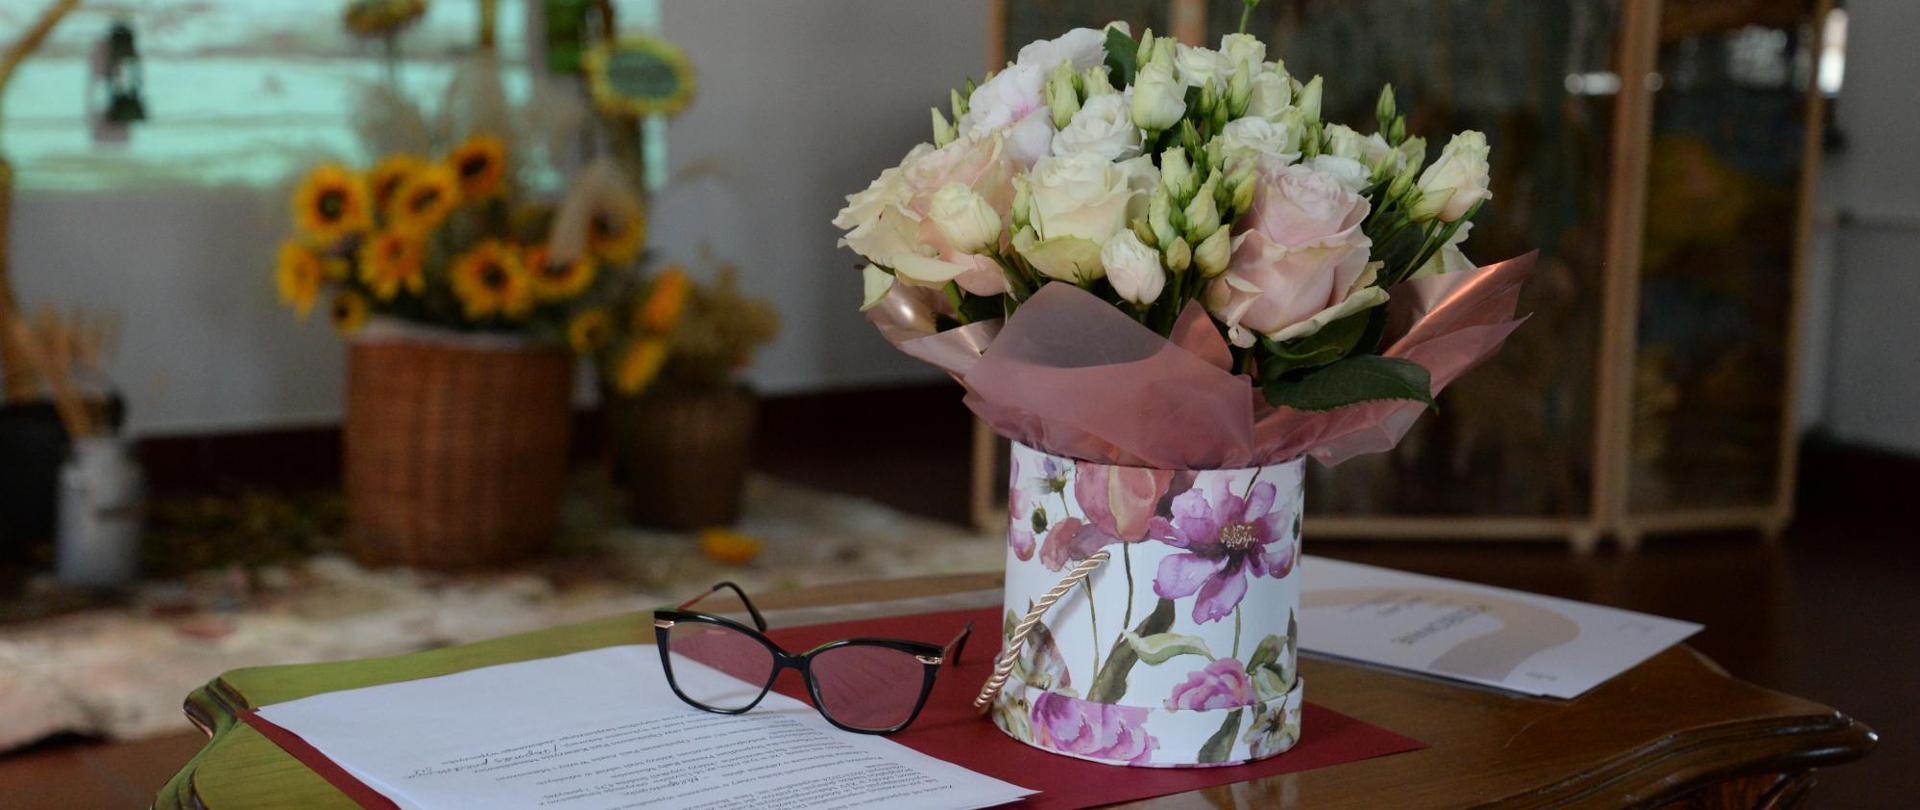 na stoliku bukiet kwiatów, obok okulary i dyplom